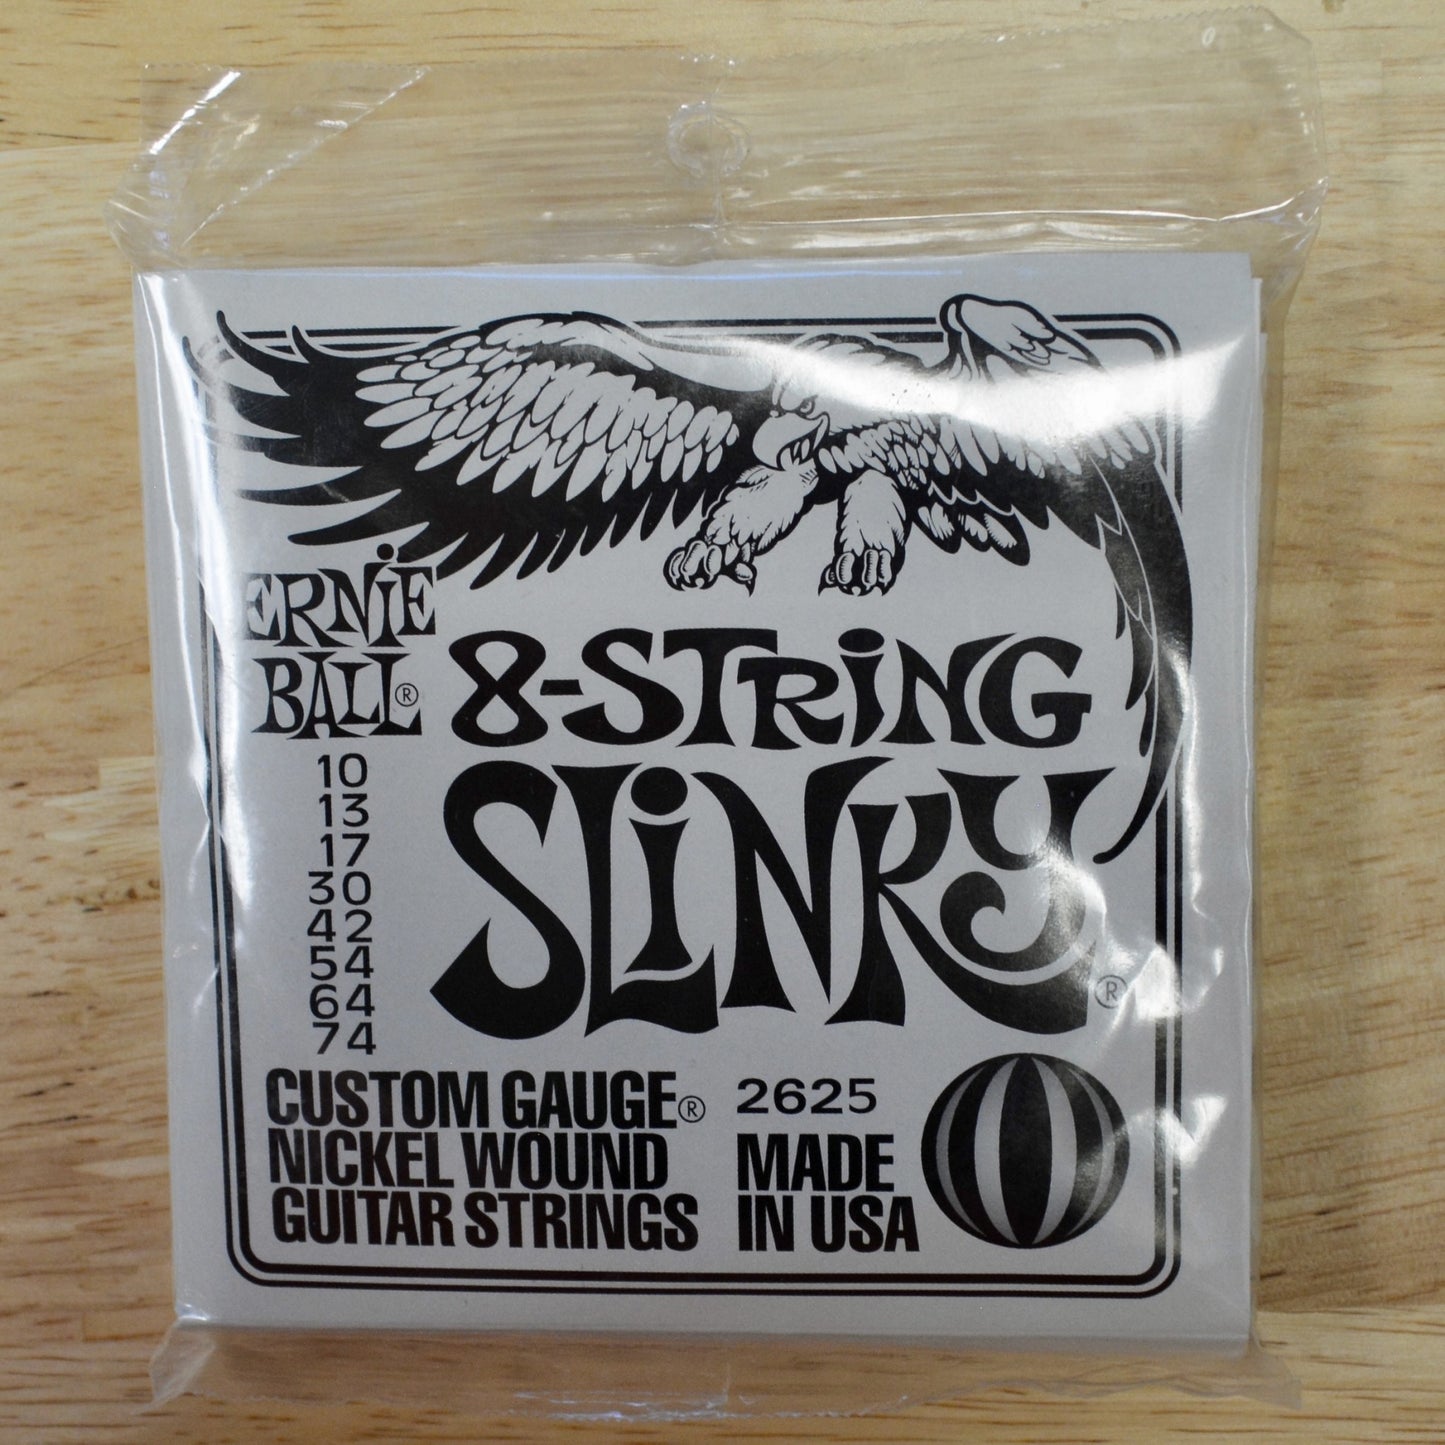 Ernie Ball 8-String Slinky